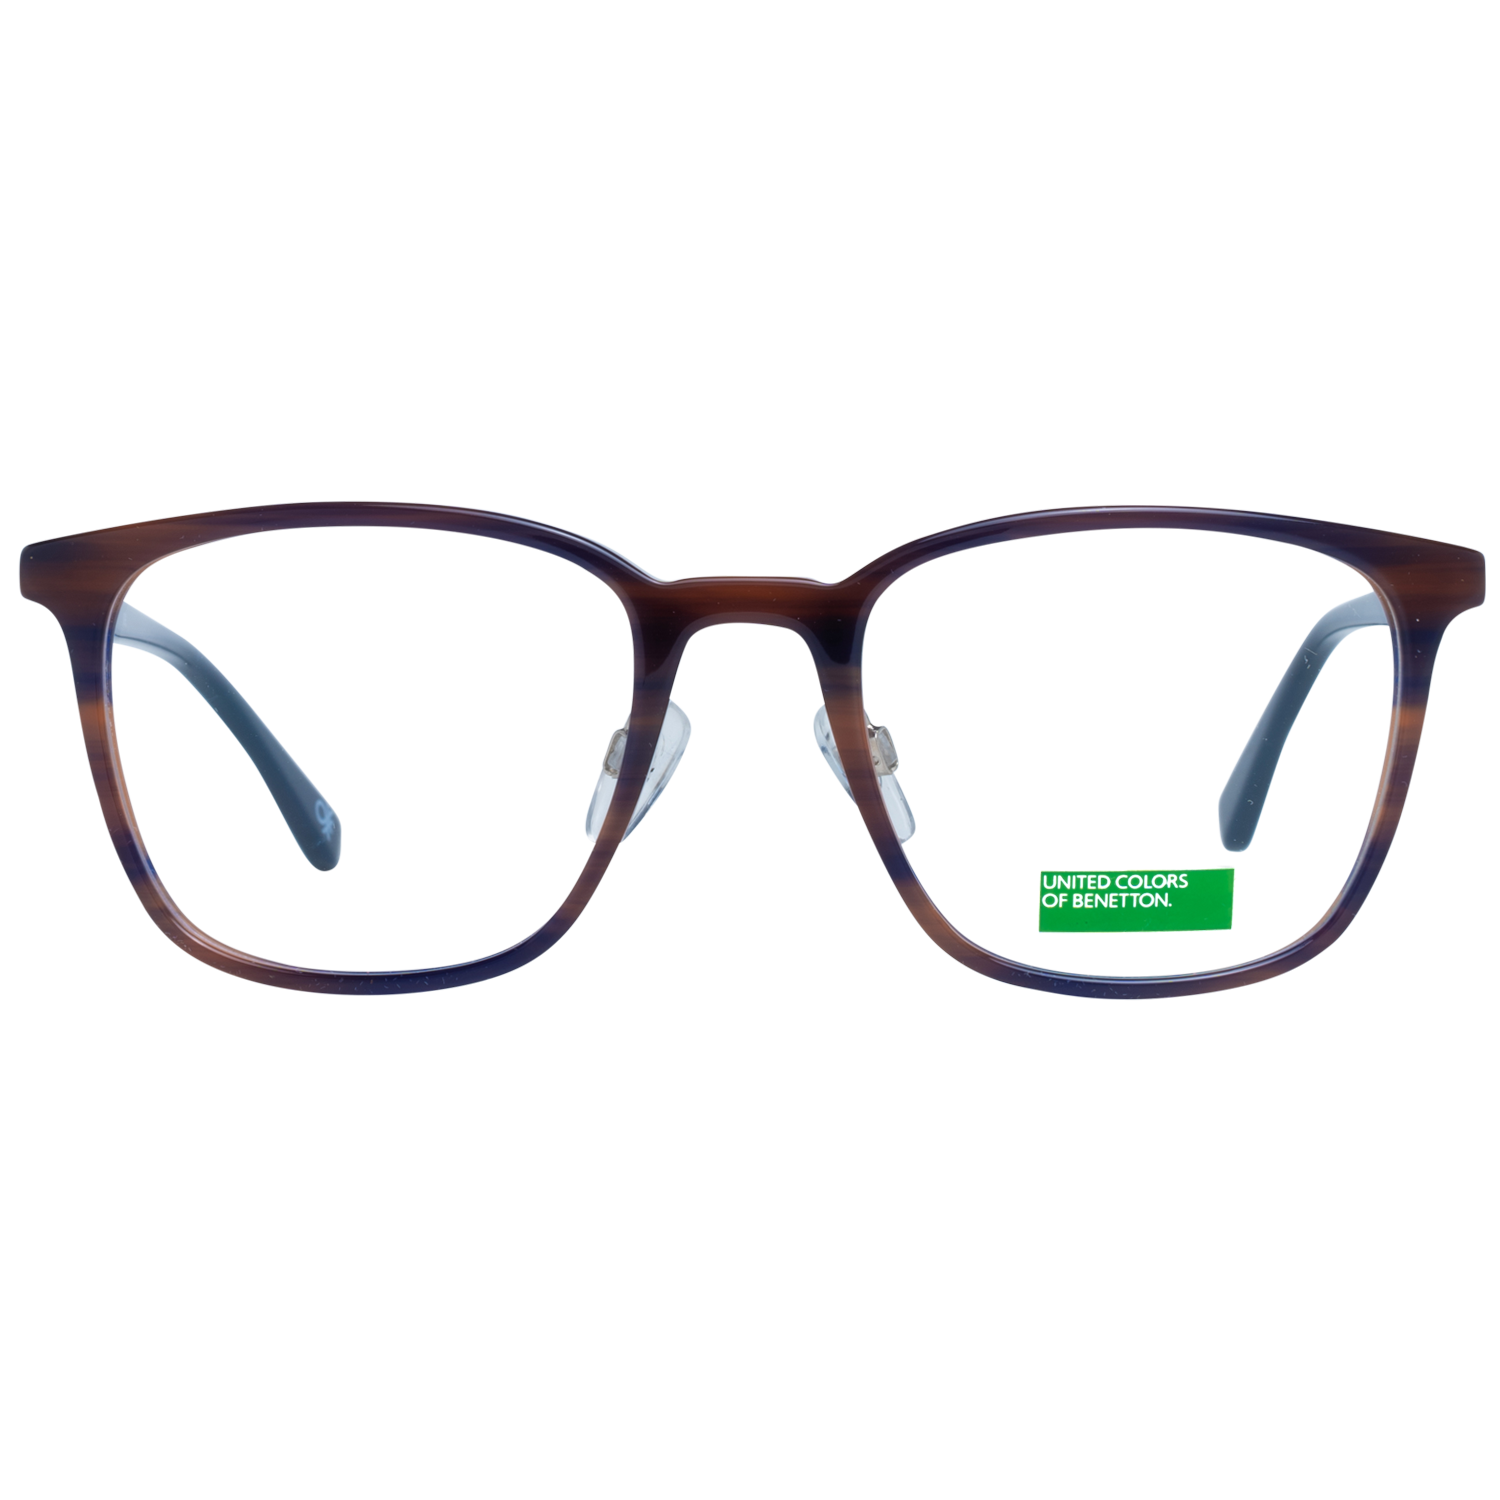 Benetton Frames Benetton Glasses Frames BEO1002 652 52 Eyeglasses Eyewear UK USA Australia 